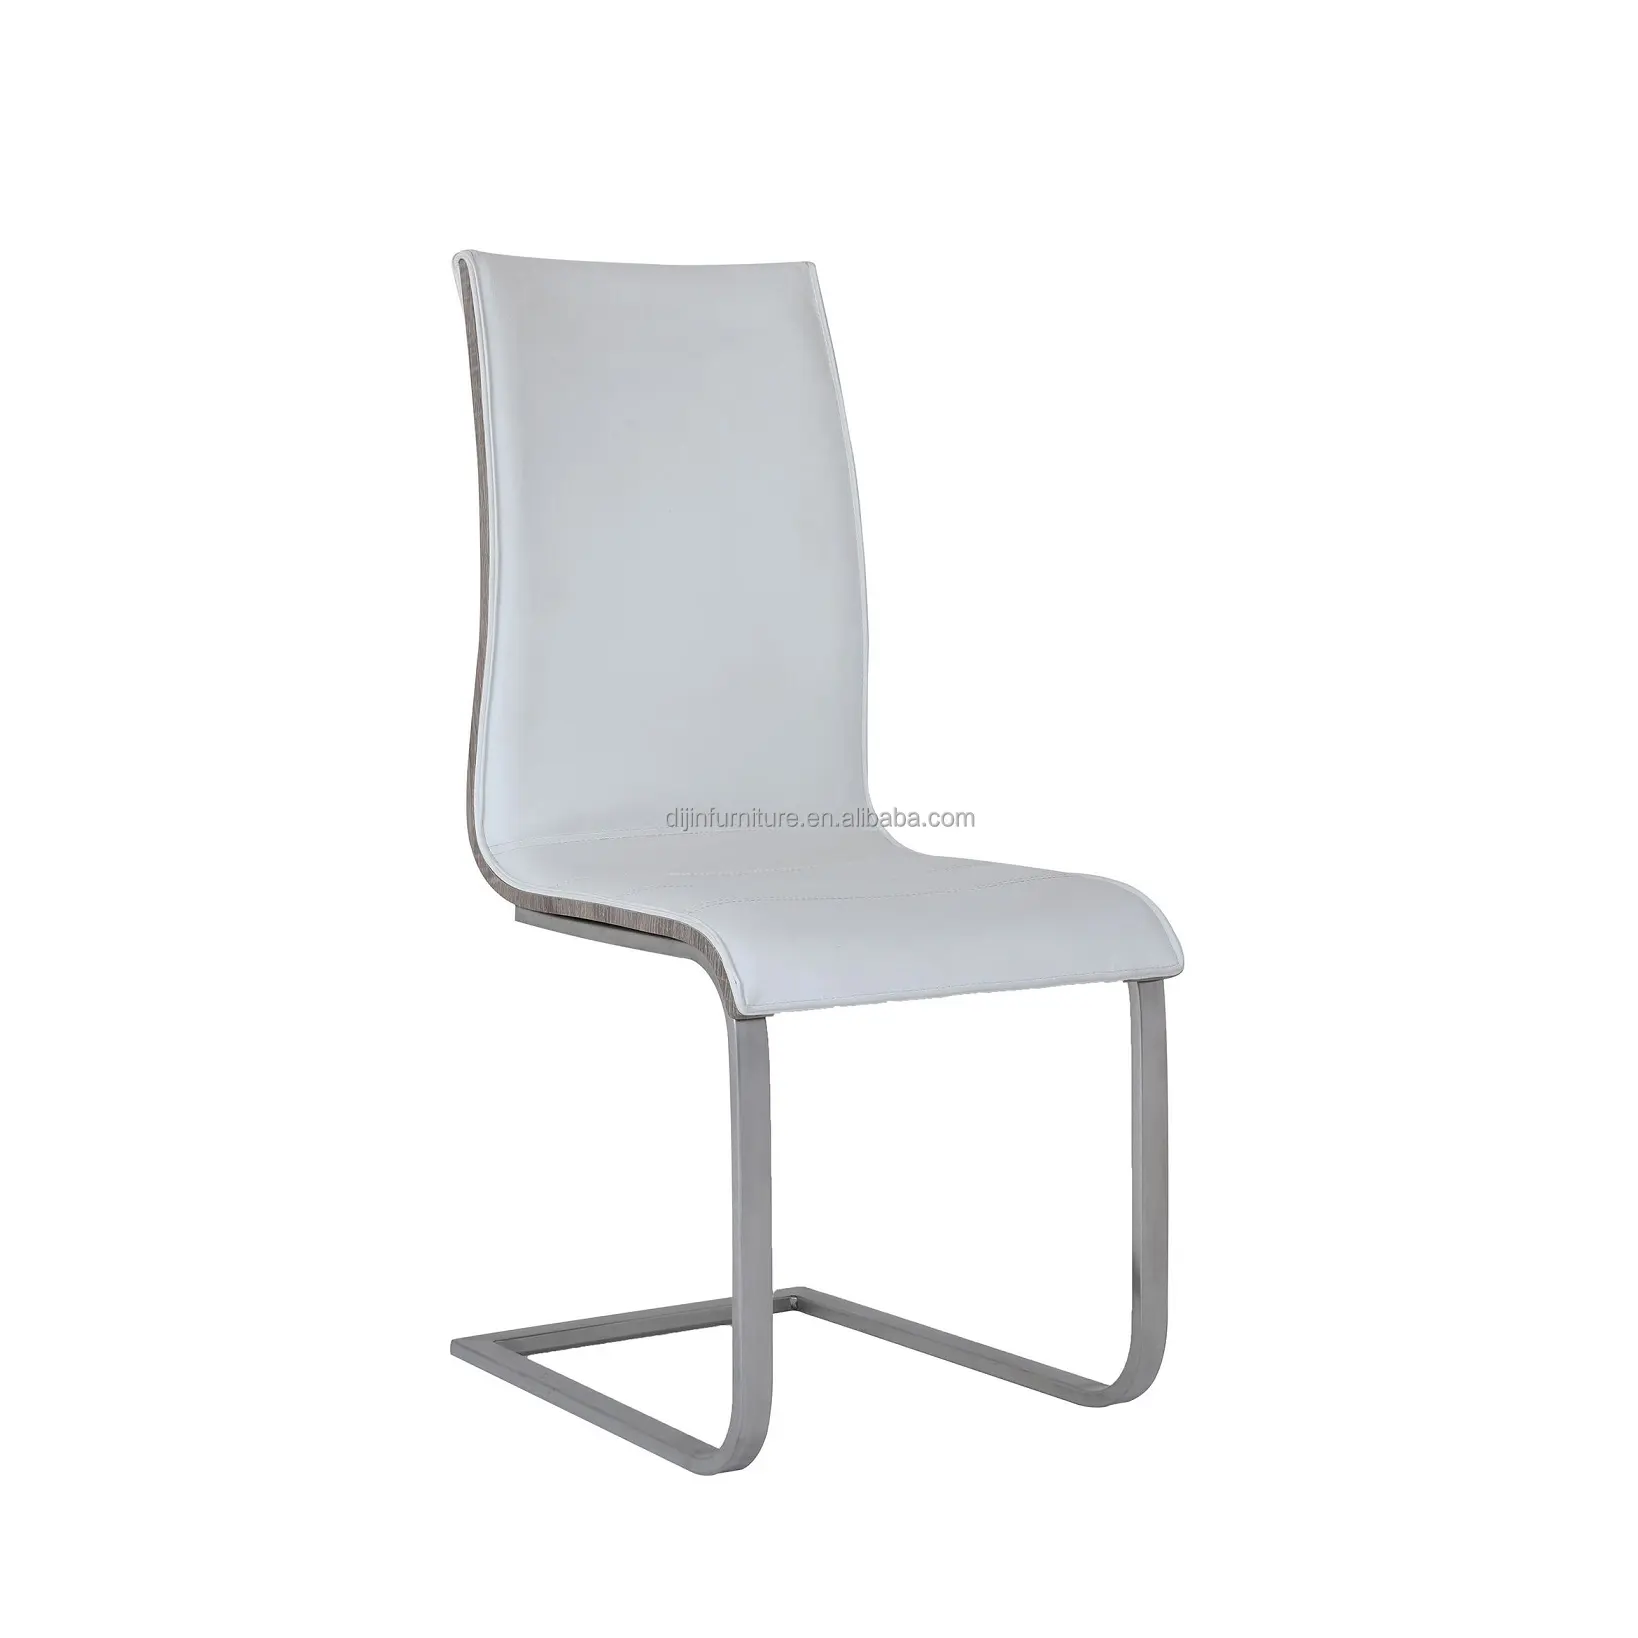 Высококачественная мебель для дома, хромированный металлический обеденный стул с ножками и бантом, роскошные обеденные стулья из дубовой древесины и искусственной кожи